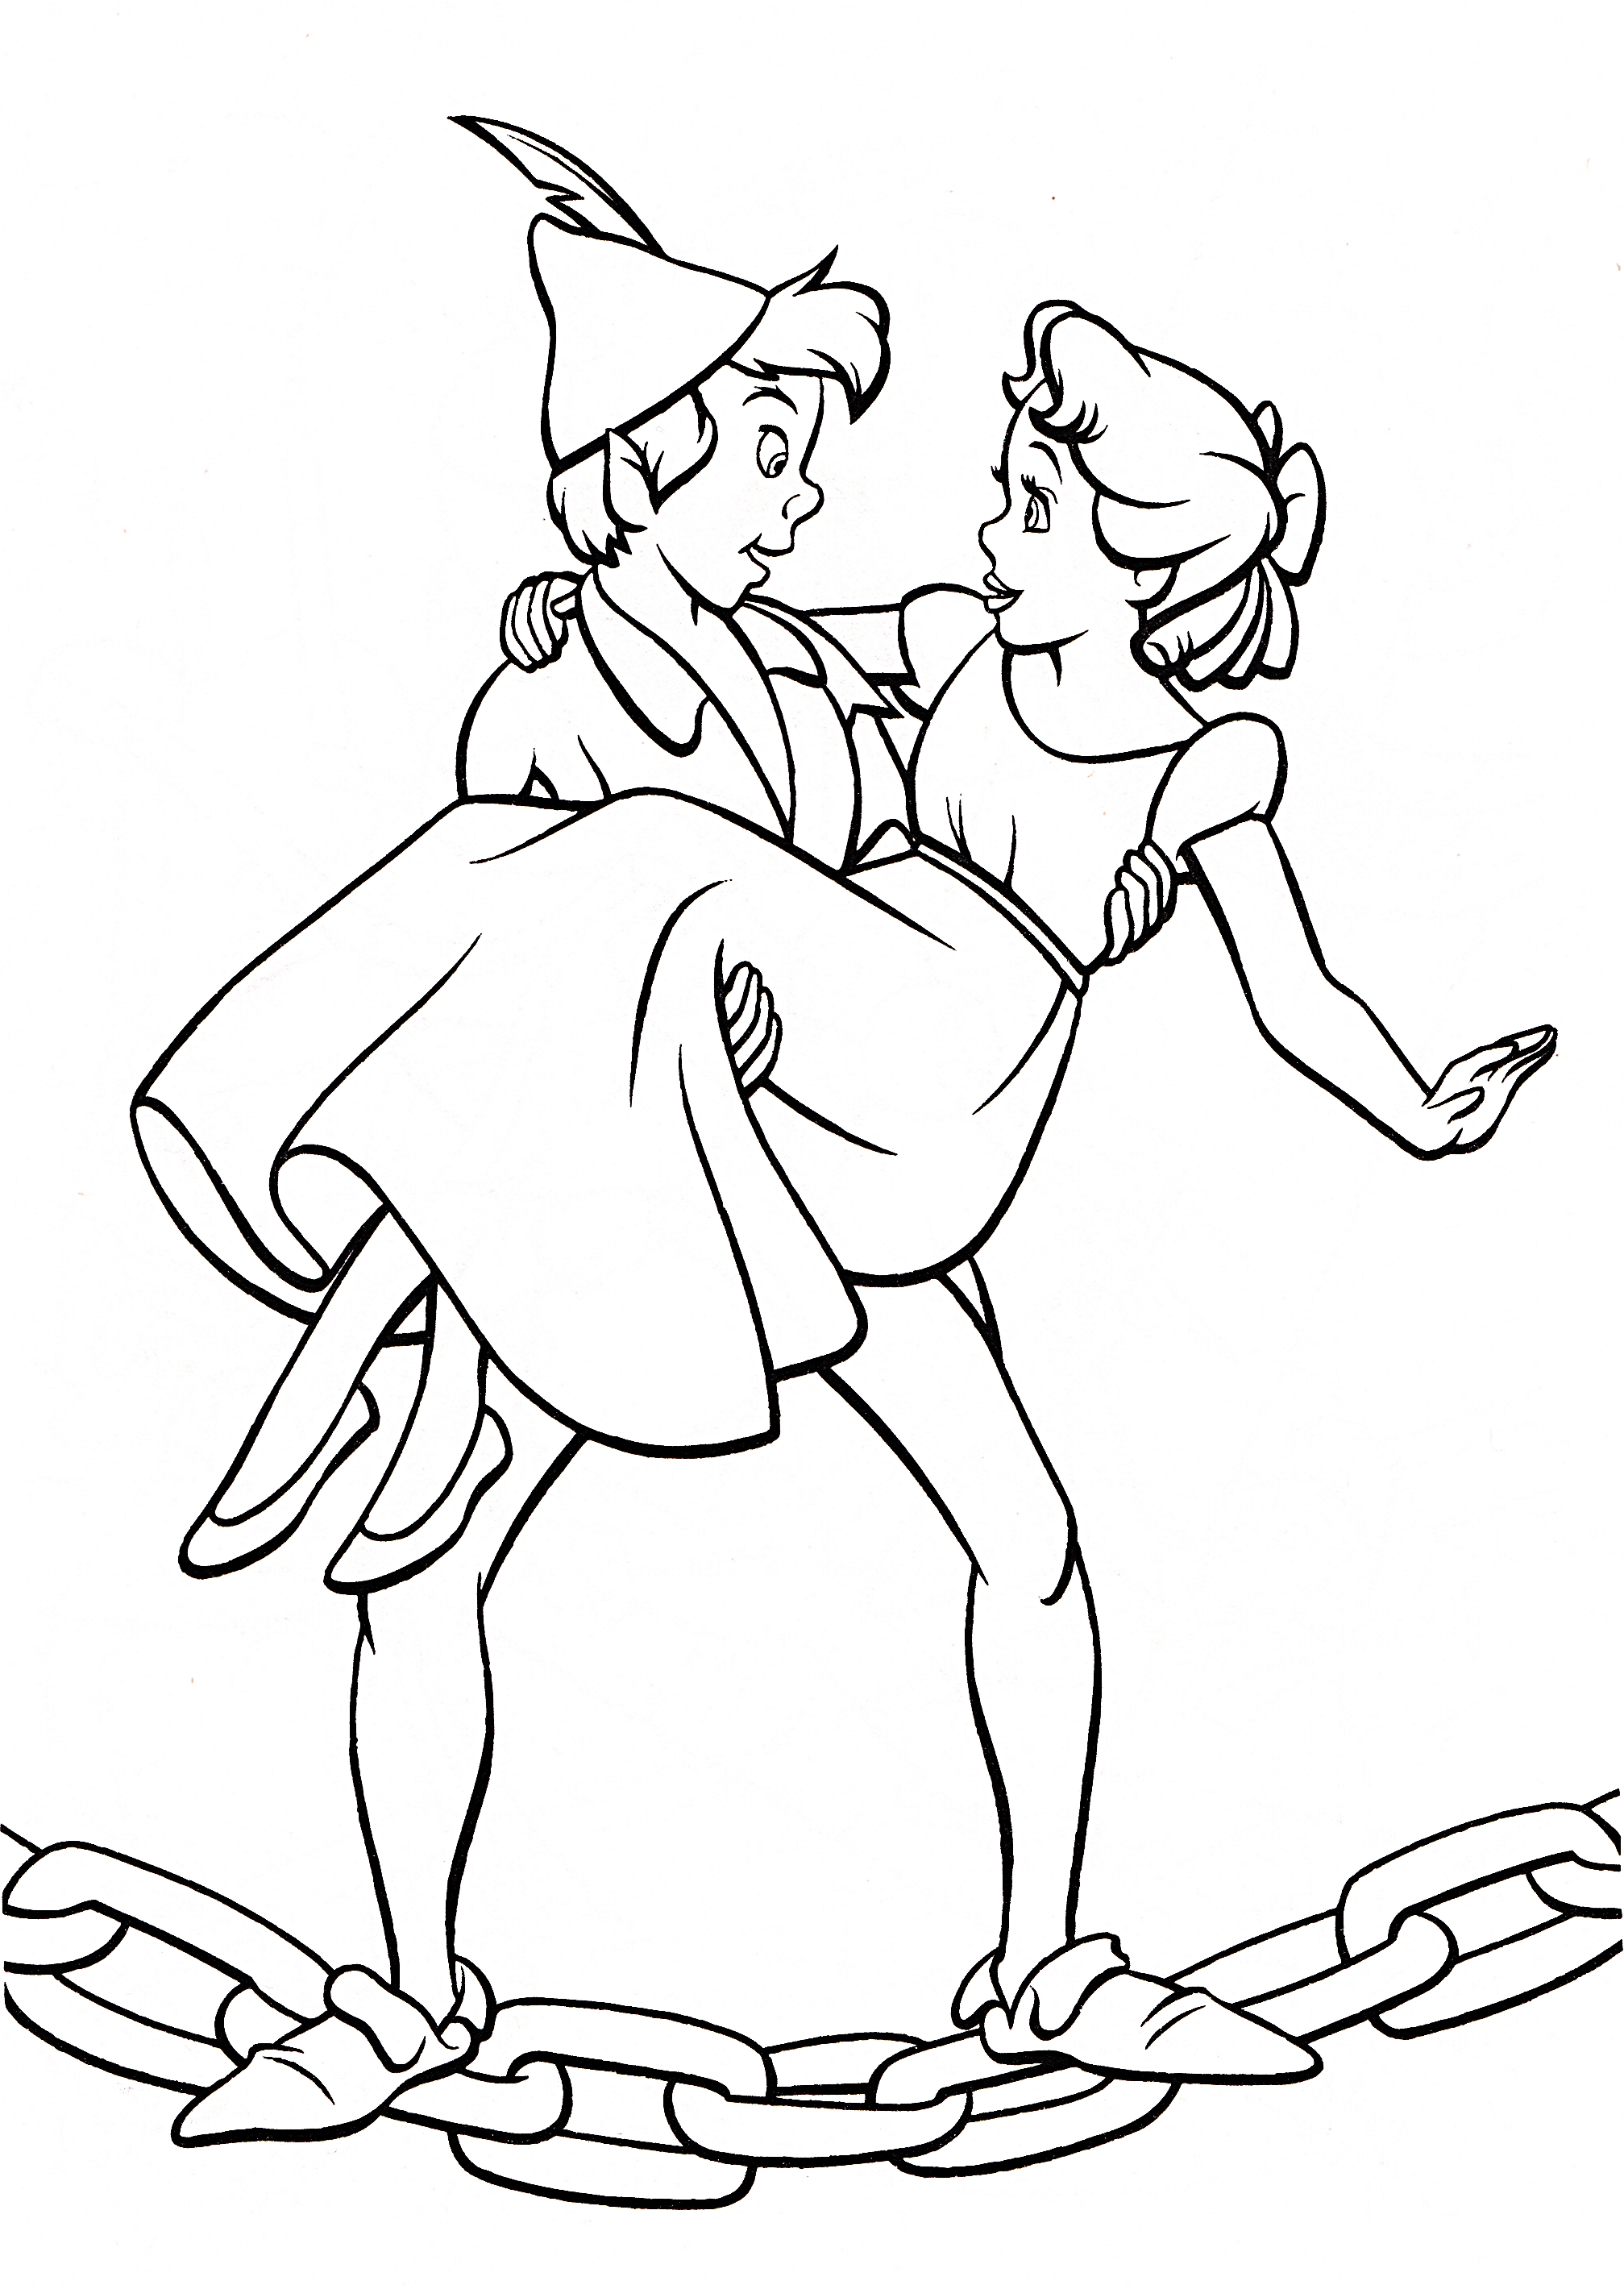 Walt Disney Coloring Pages - Peter Pan & Wendy Darling - Walt Disney